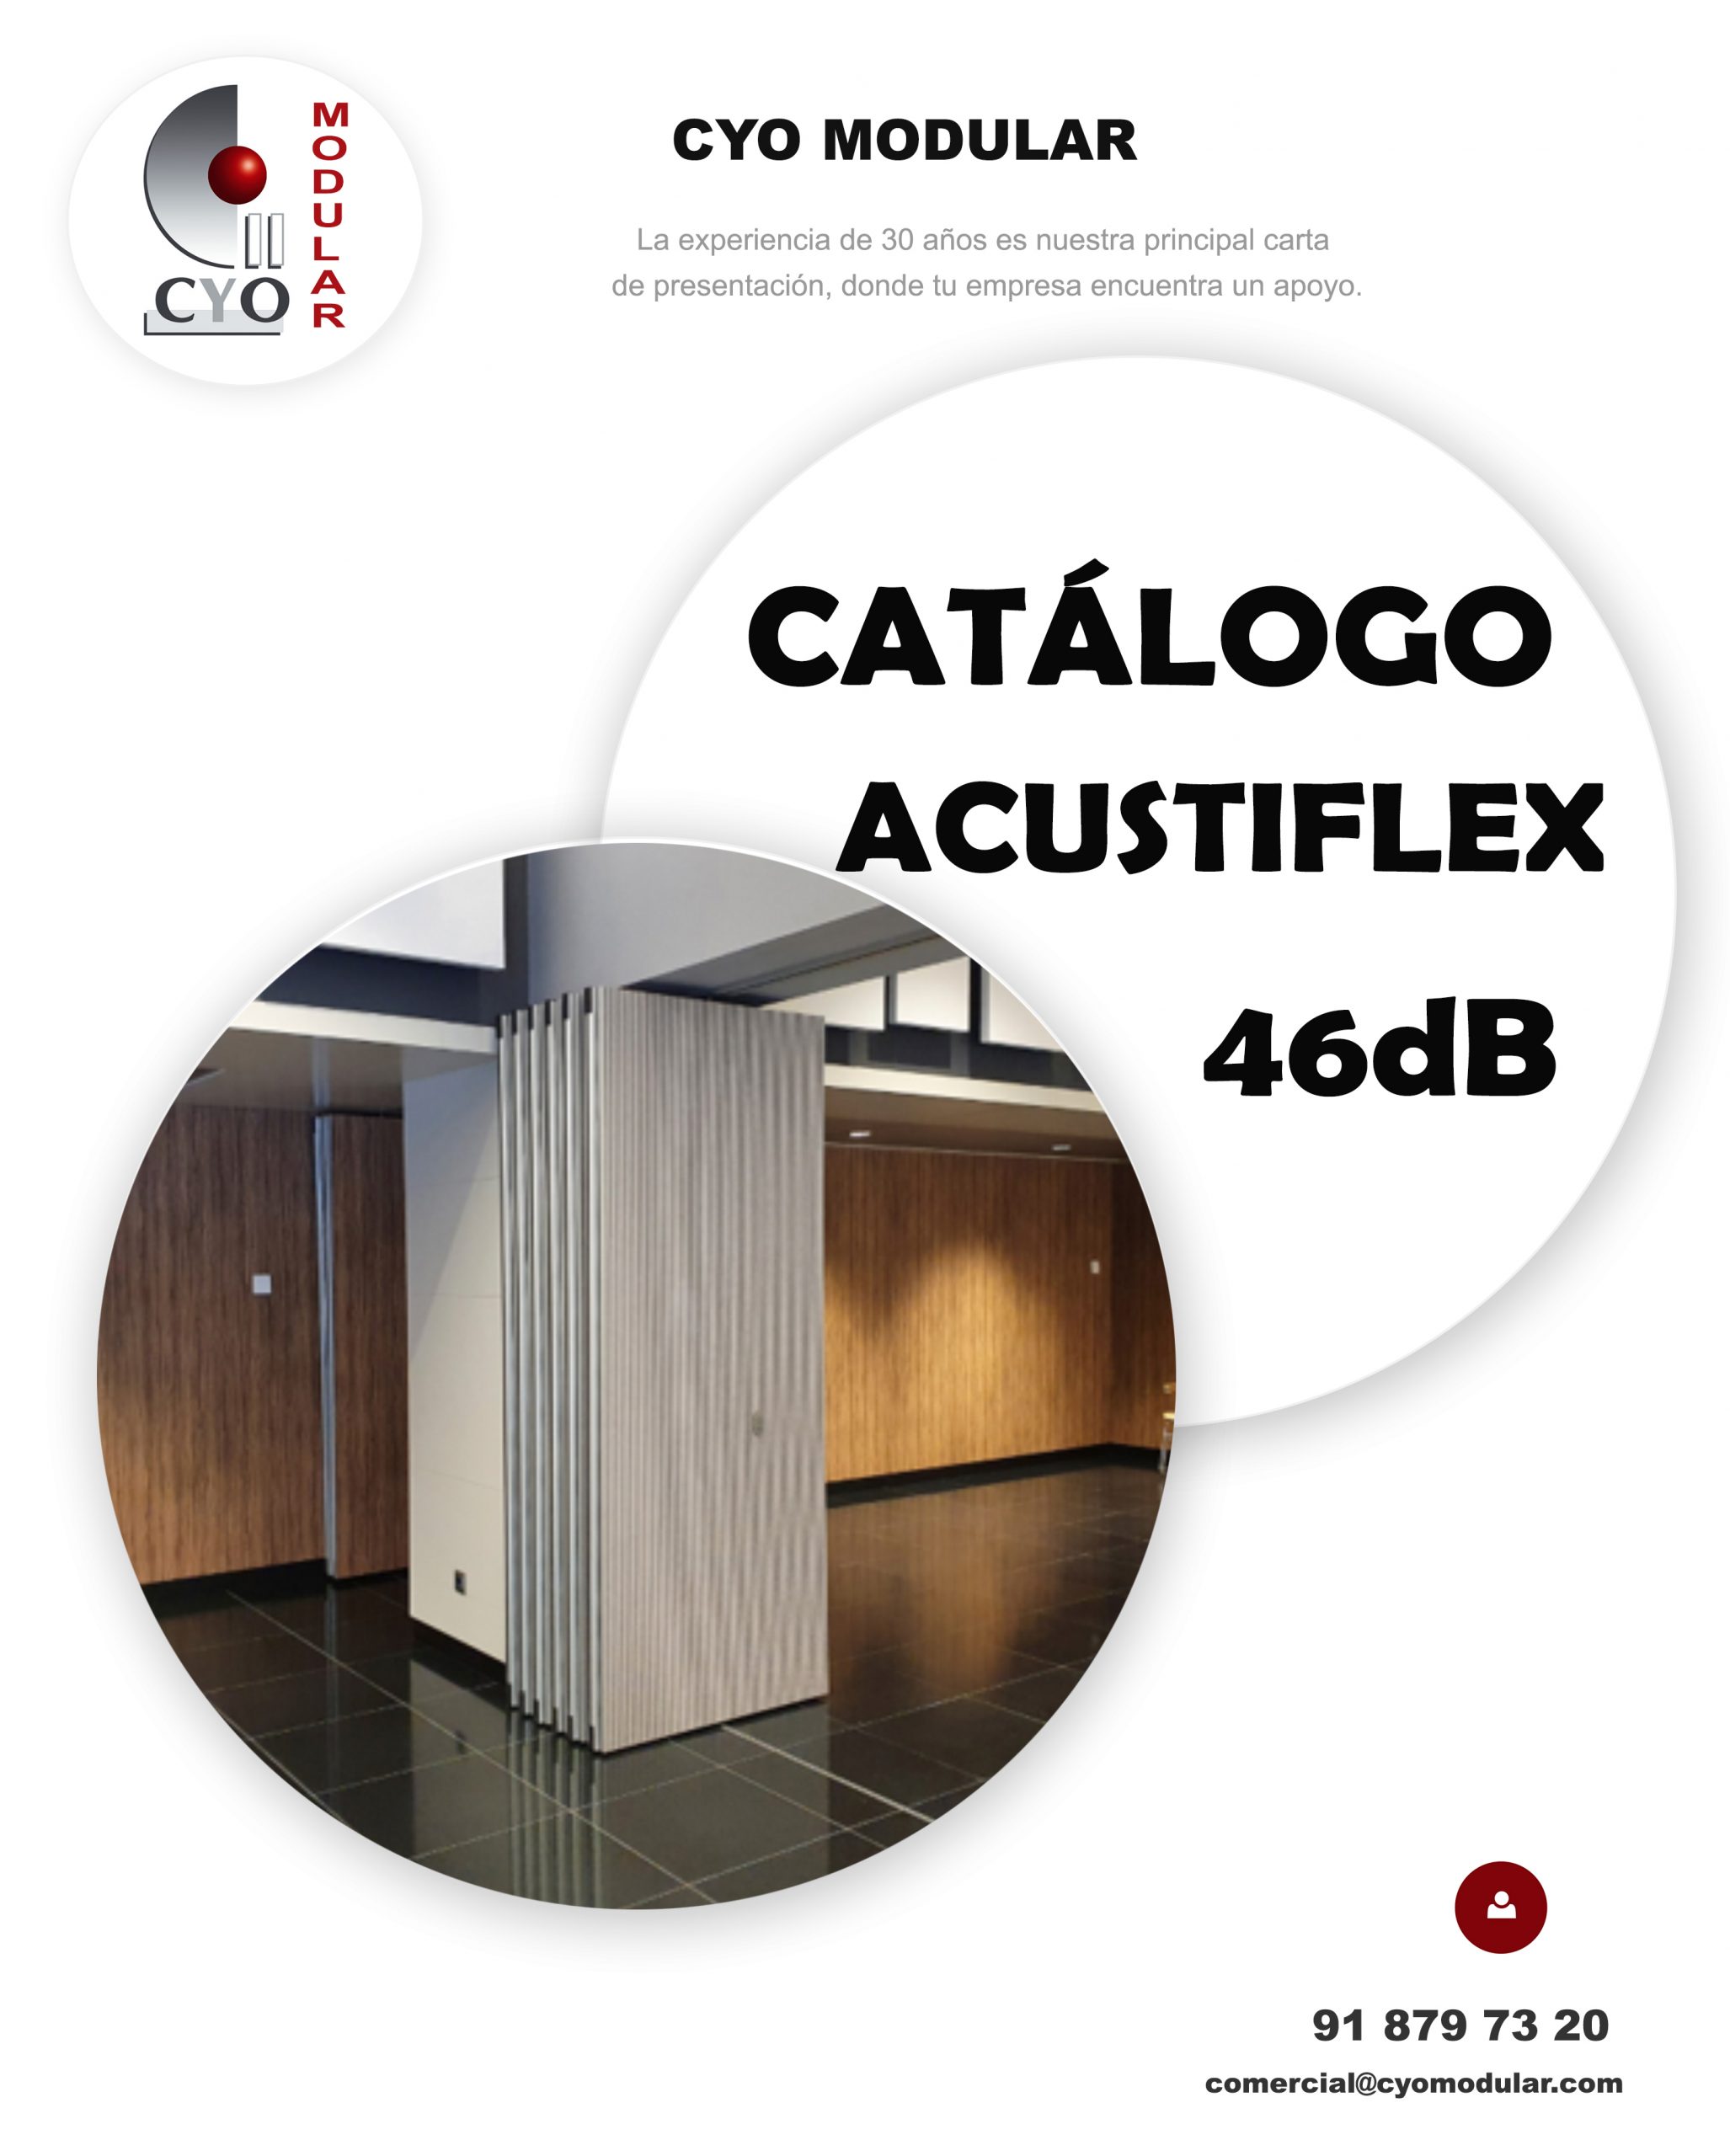 001. Acustiflex 46